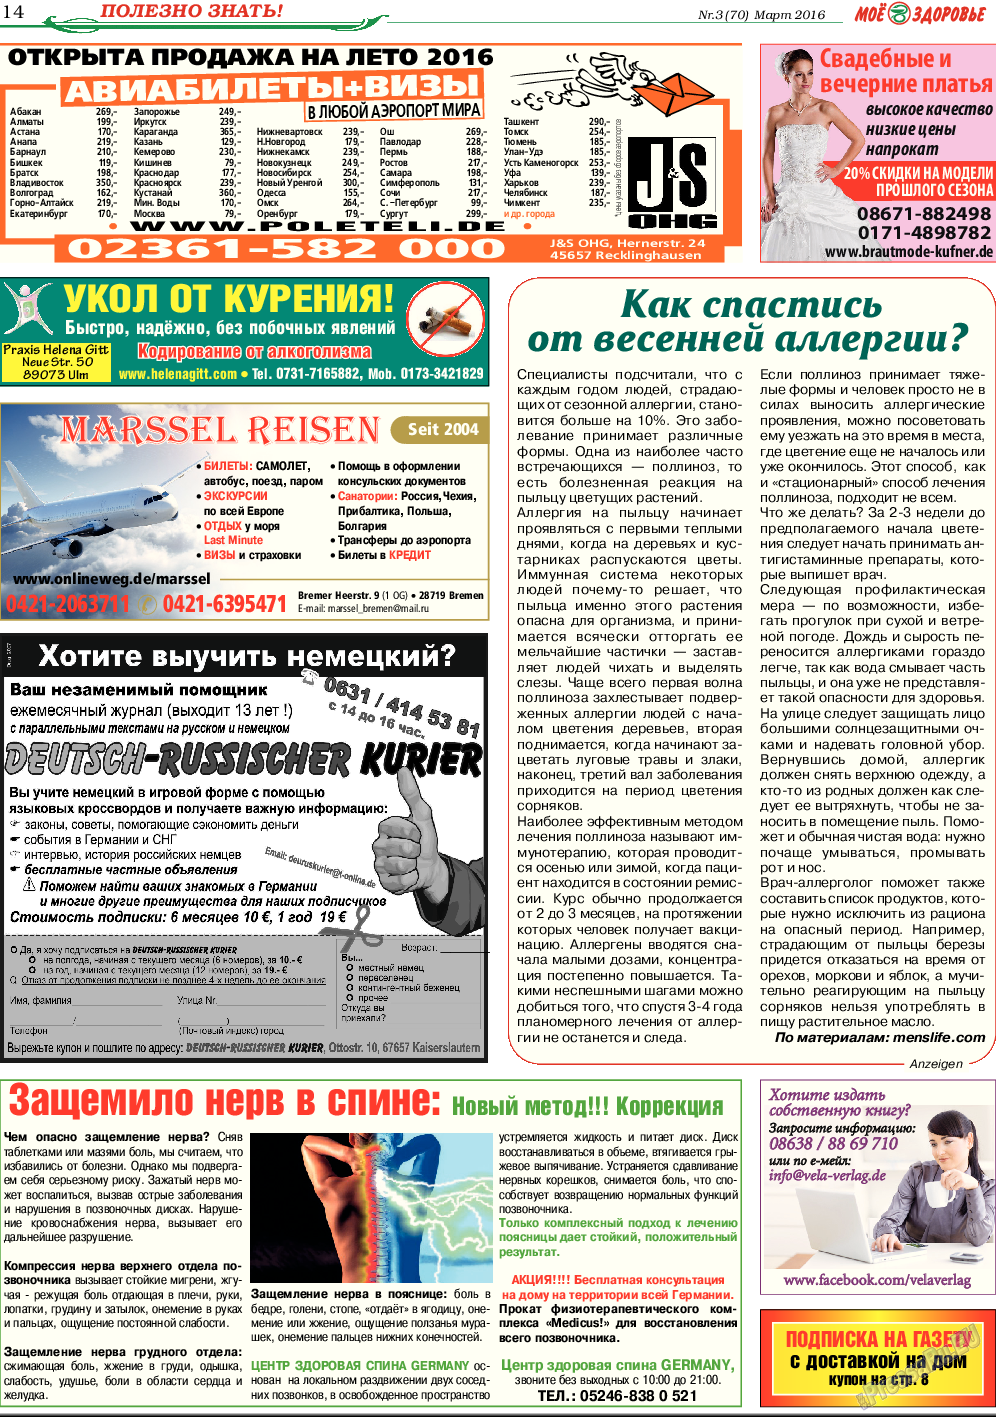 Кругозор, газета. 2016 №3 стр.14